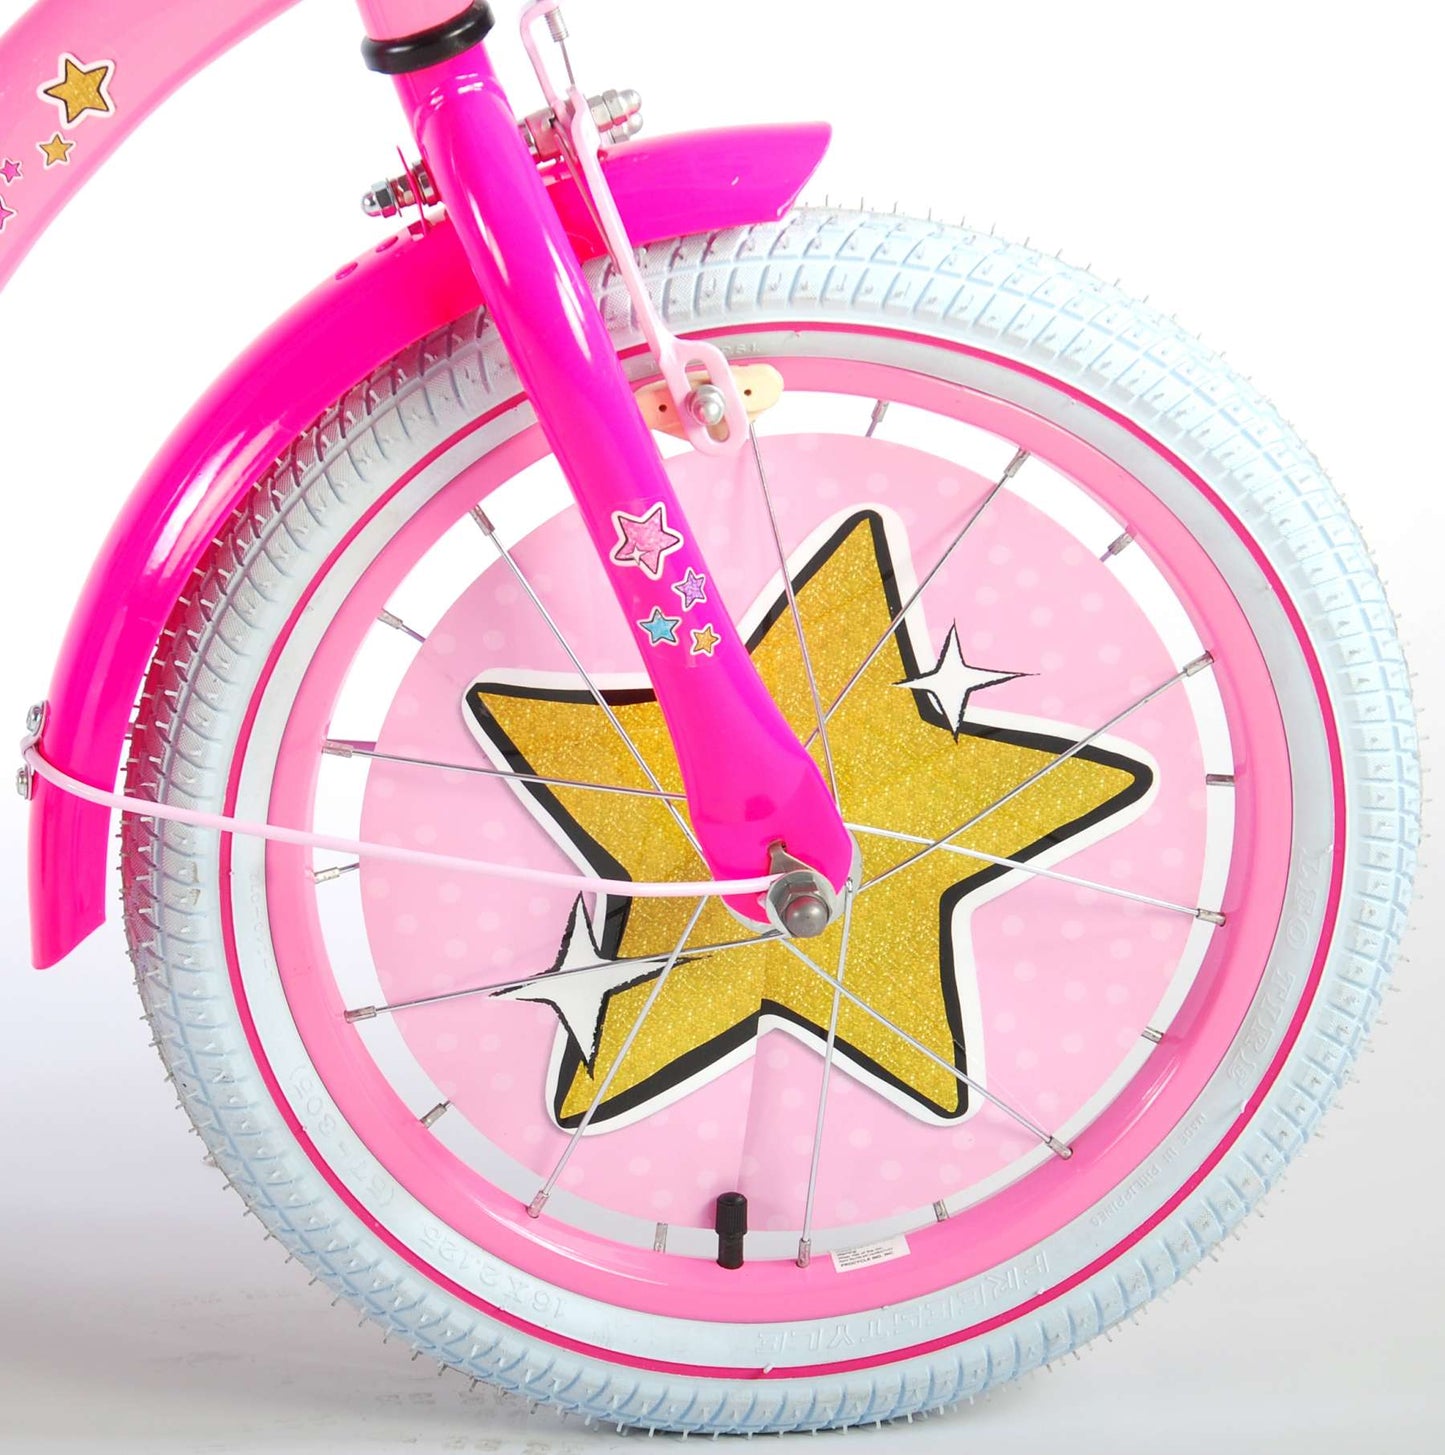 LOL Surprise Kinderfiets - Meisjes - 16 inch - Roze